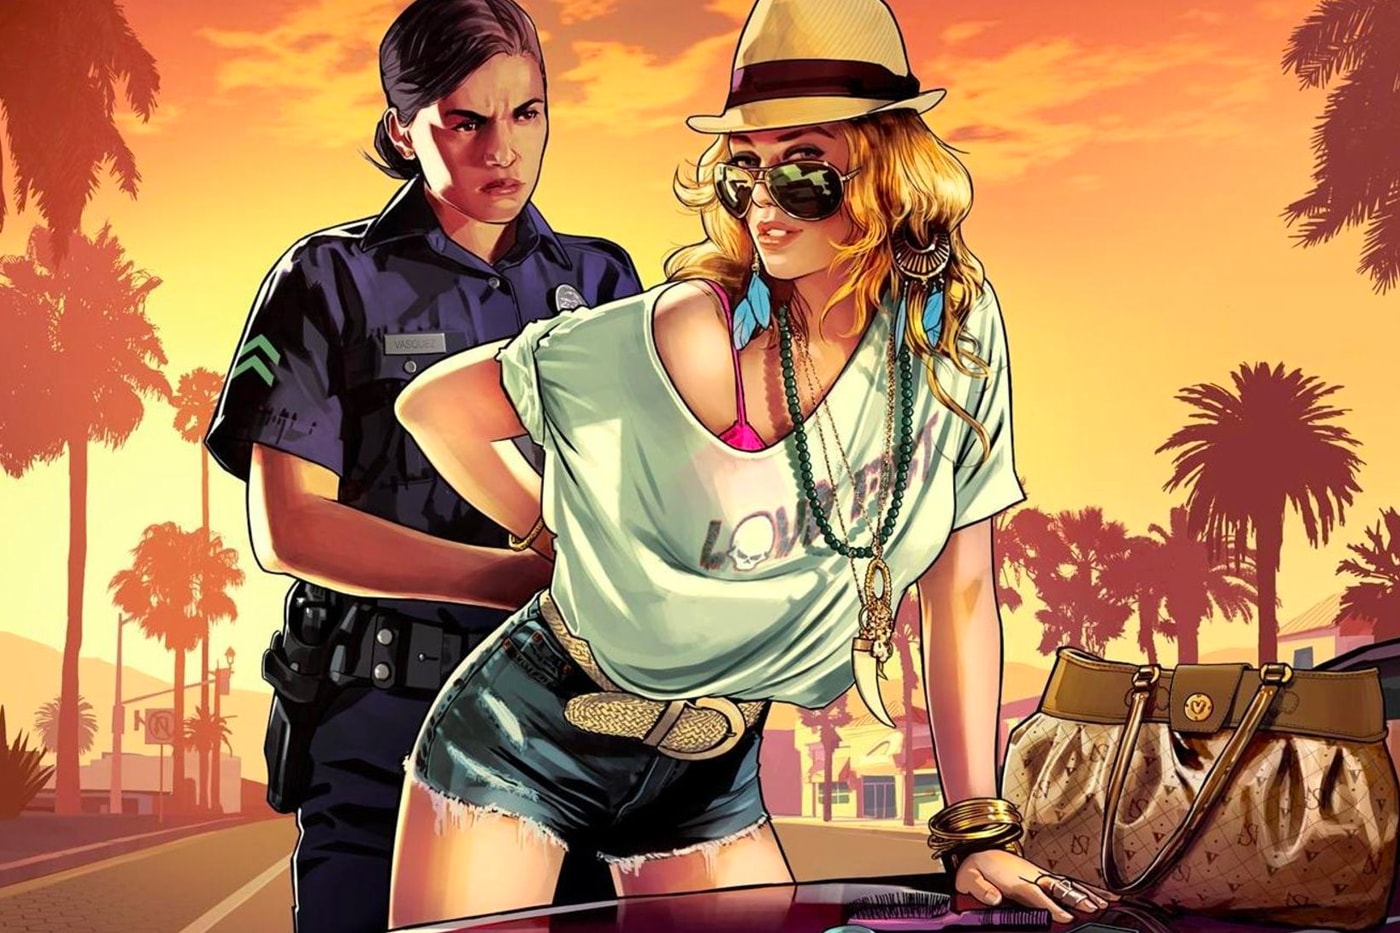 ‘GTA 6’에는 시리즈 최초로 여성 주인공이 등장한다? 쥐티에이, VI, 락스타게임즈, Grand Theft Auto VI 